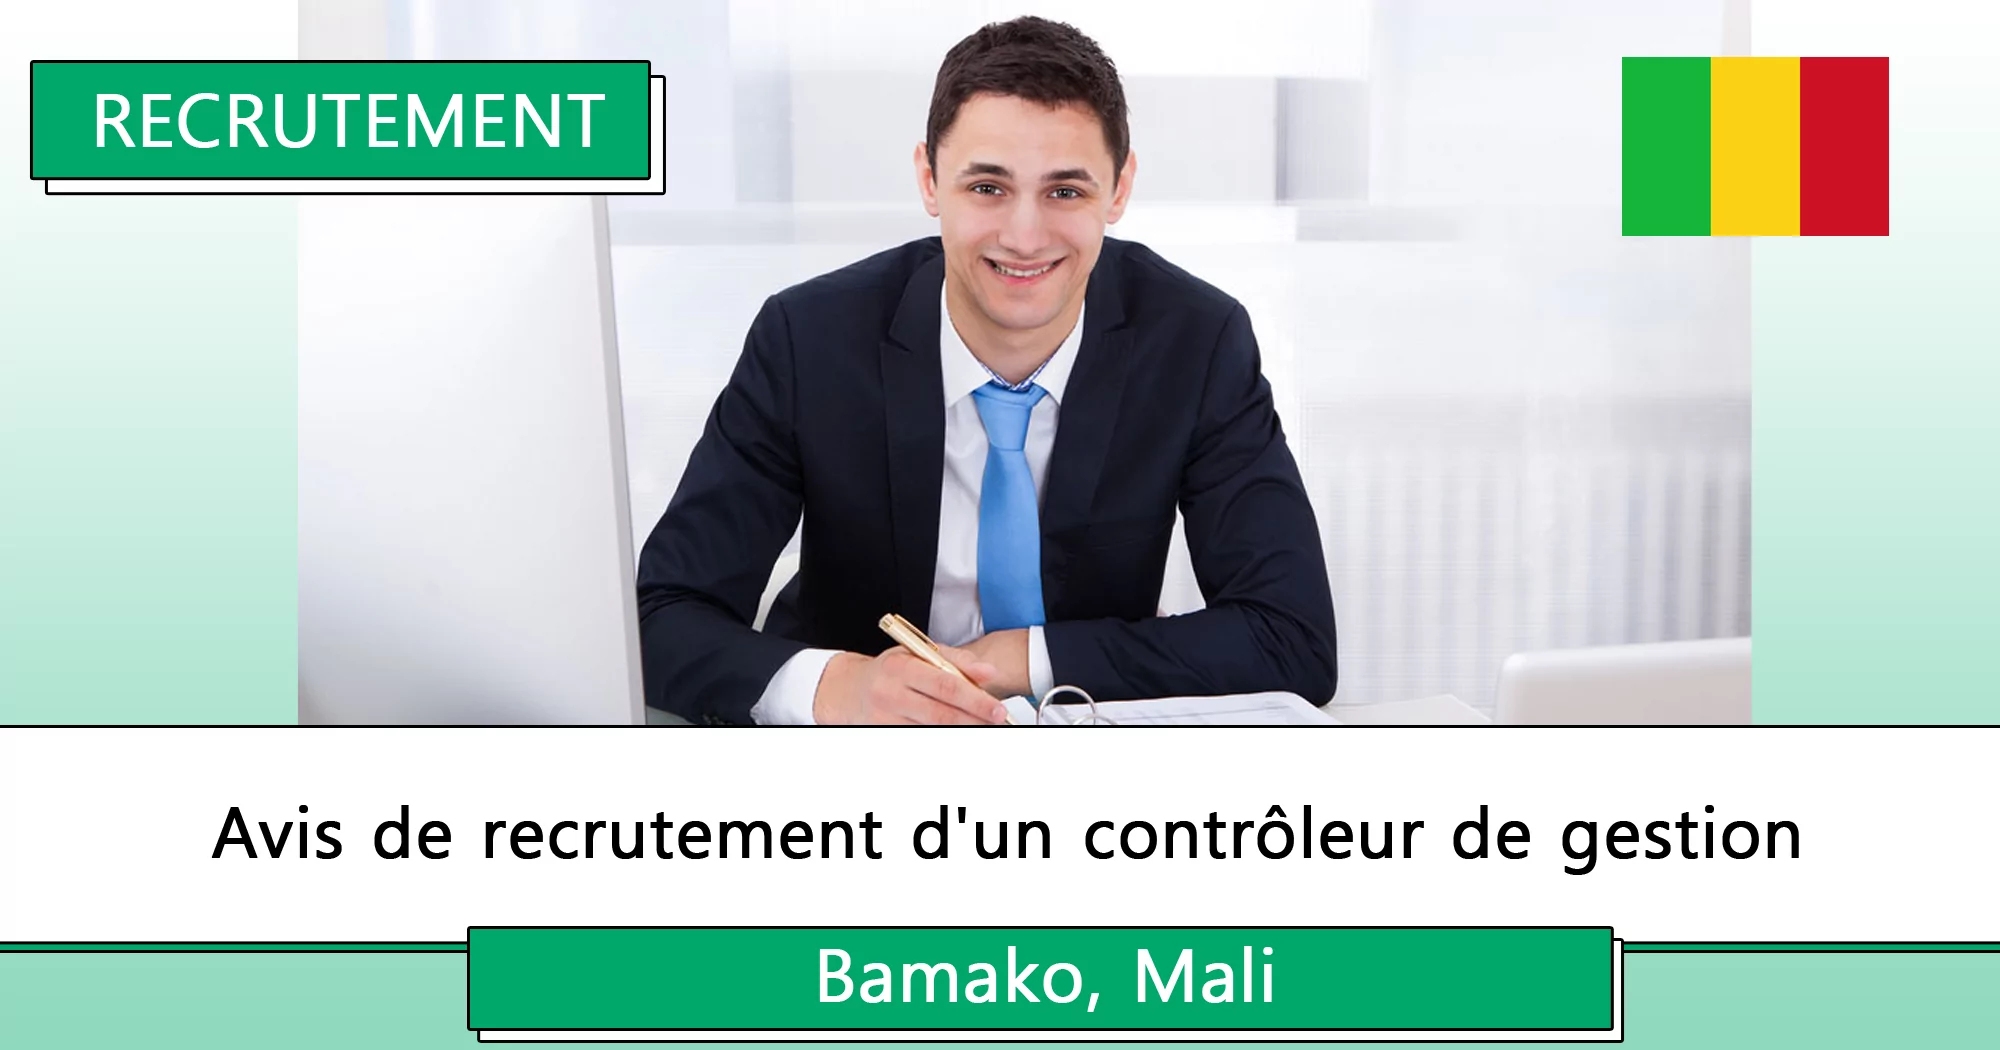 Avis de recrutement d’un contrôleur de gestion, Bamako, Mali